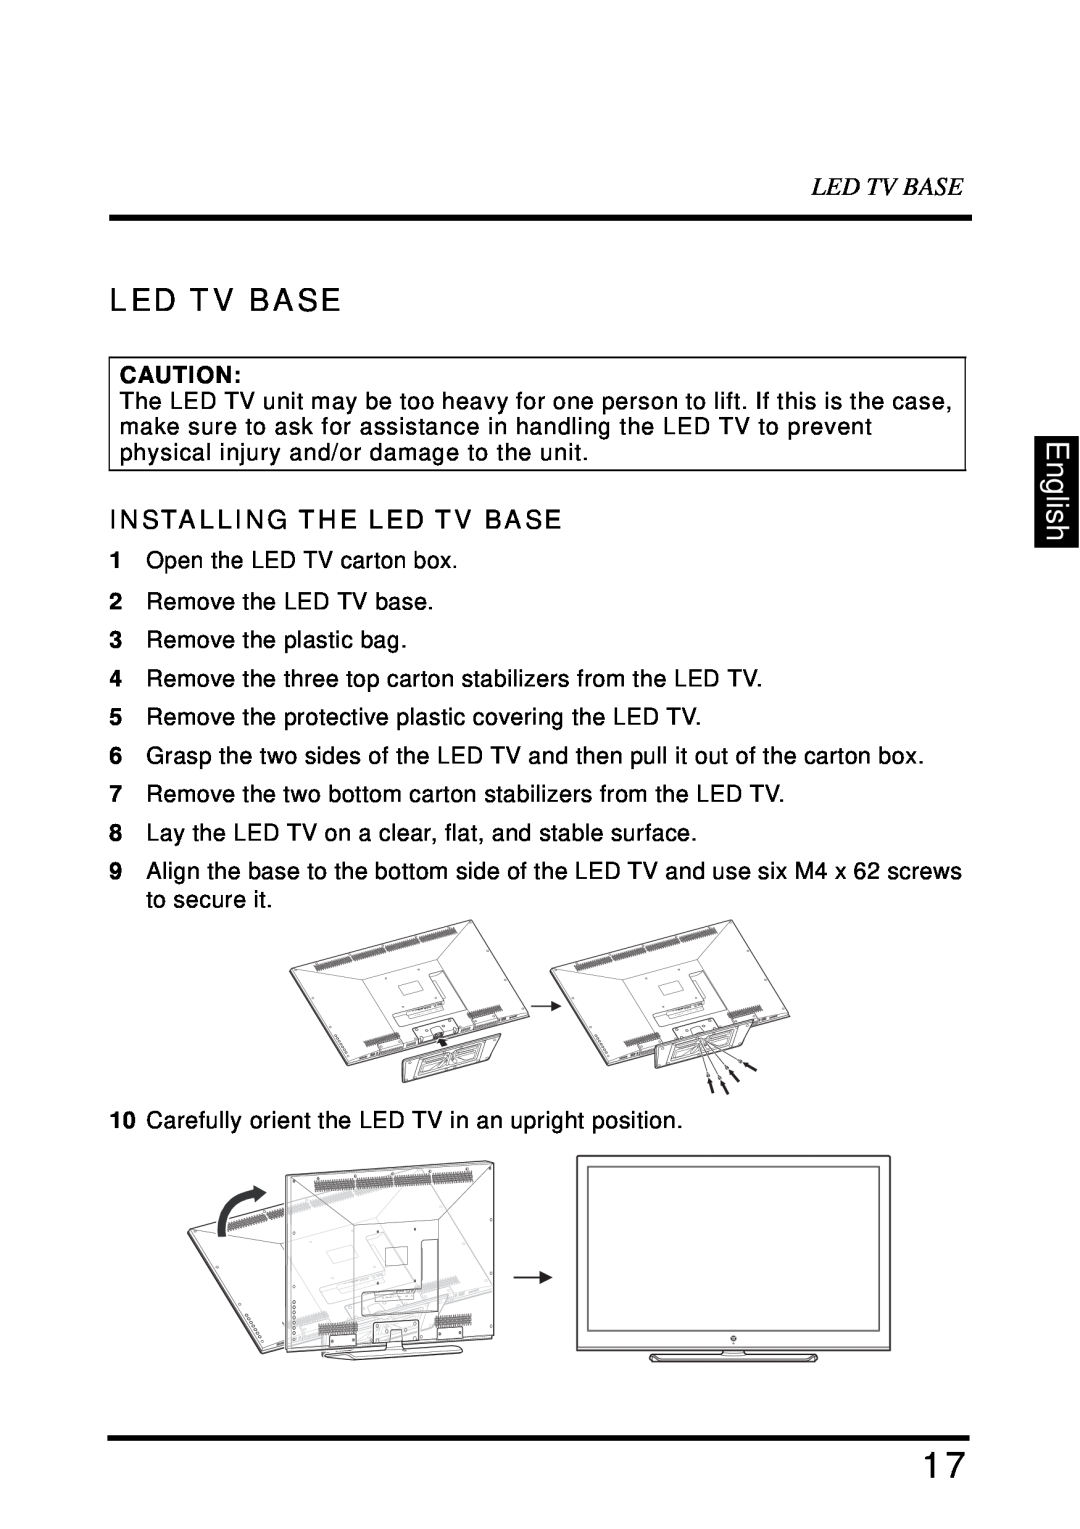 Westinghouse LD-4680 user manual English, Installing The Led Tv Base 